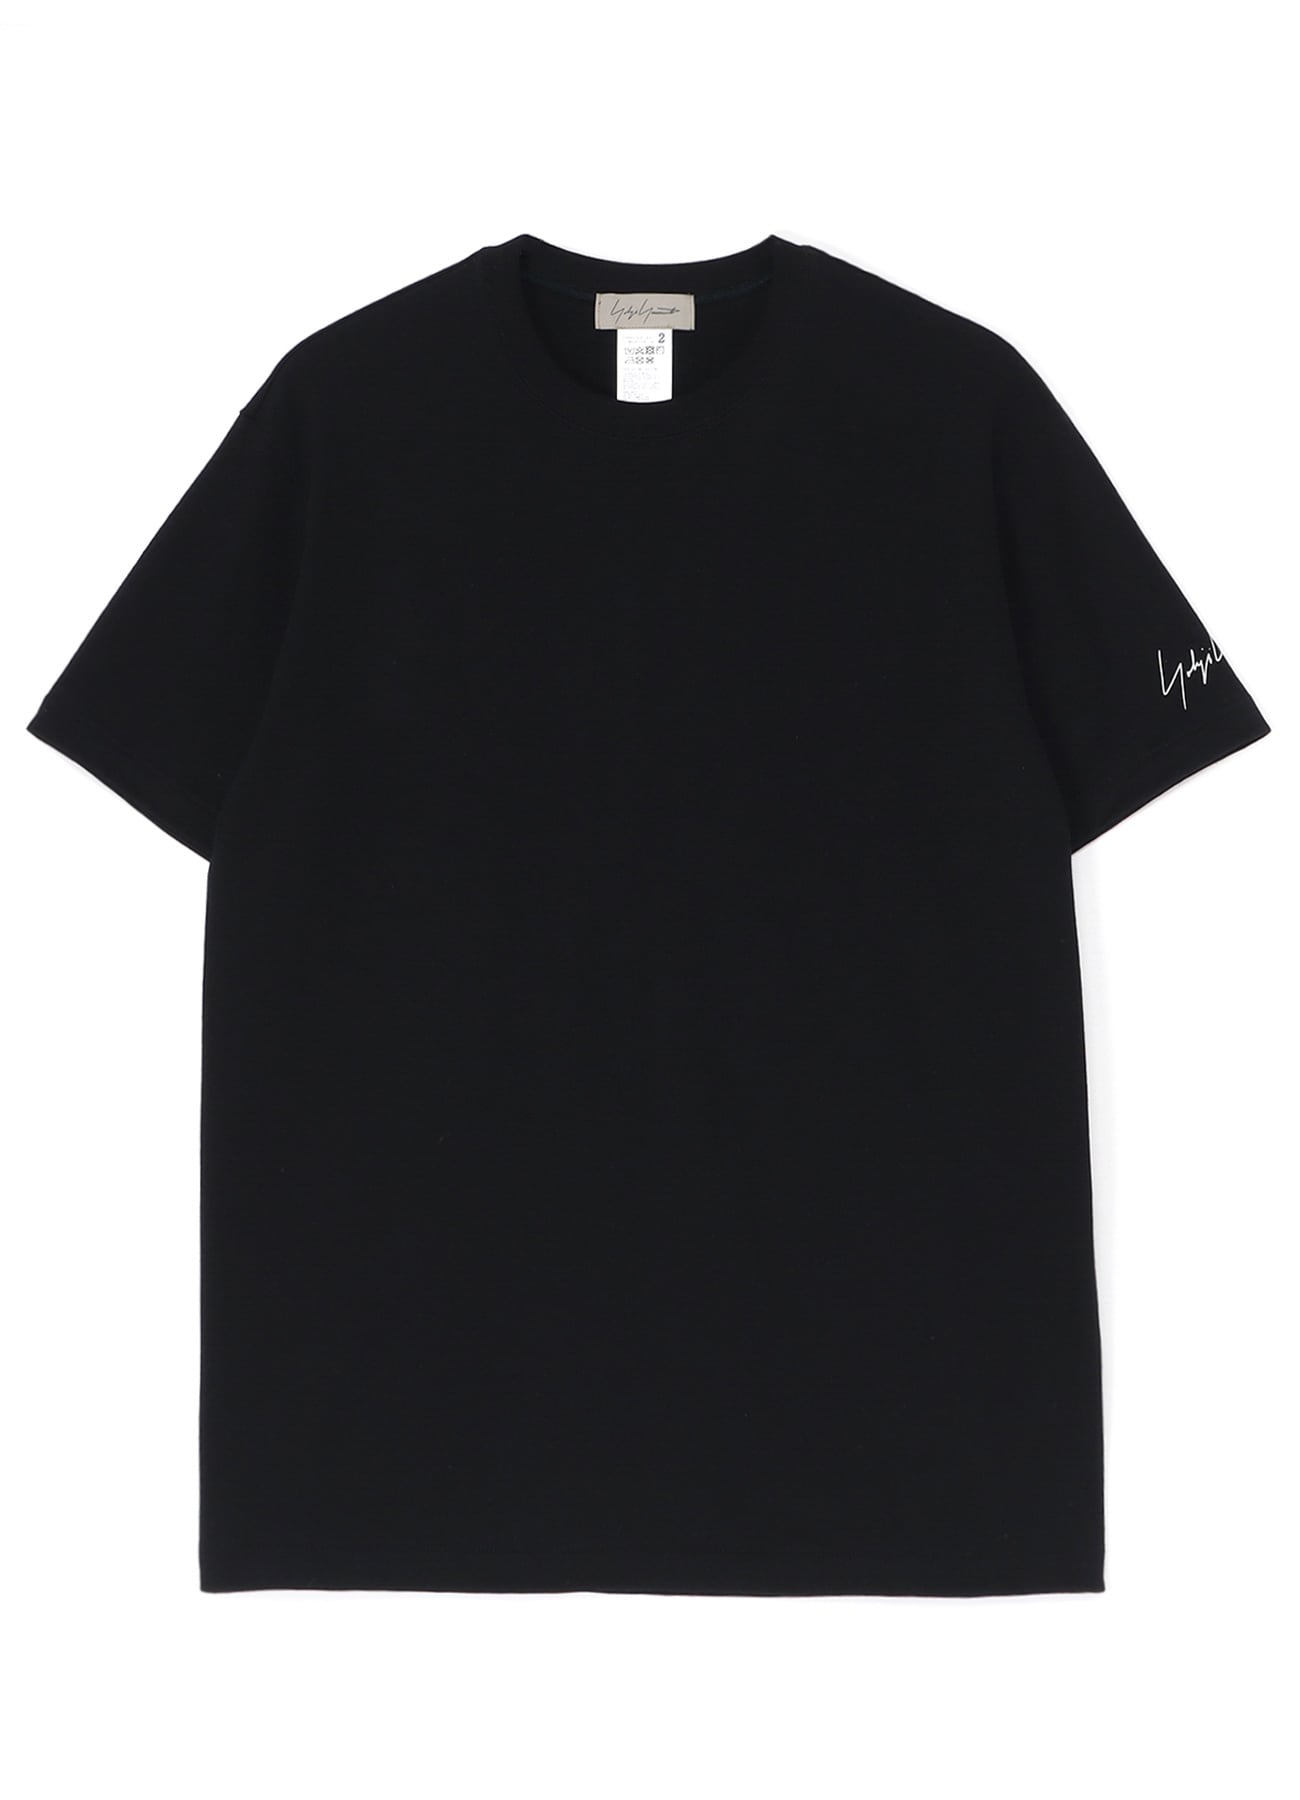 新作人気 9090 Pack 90 T-Shirts パックT Tシャツ 白 黒 トップス 